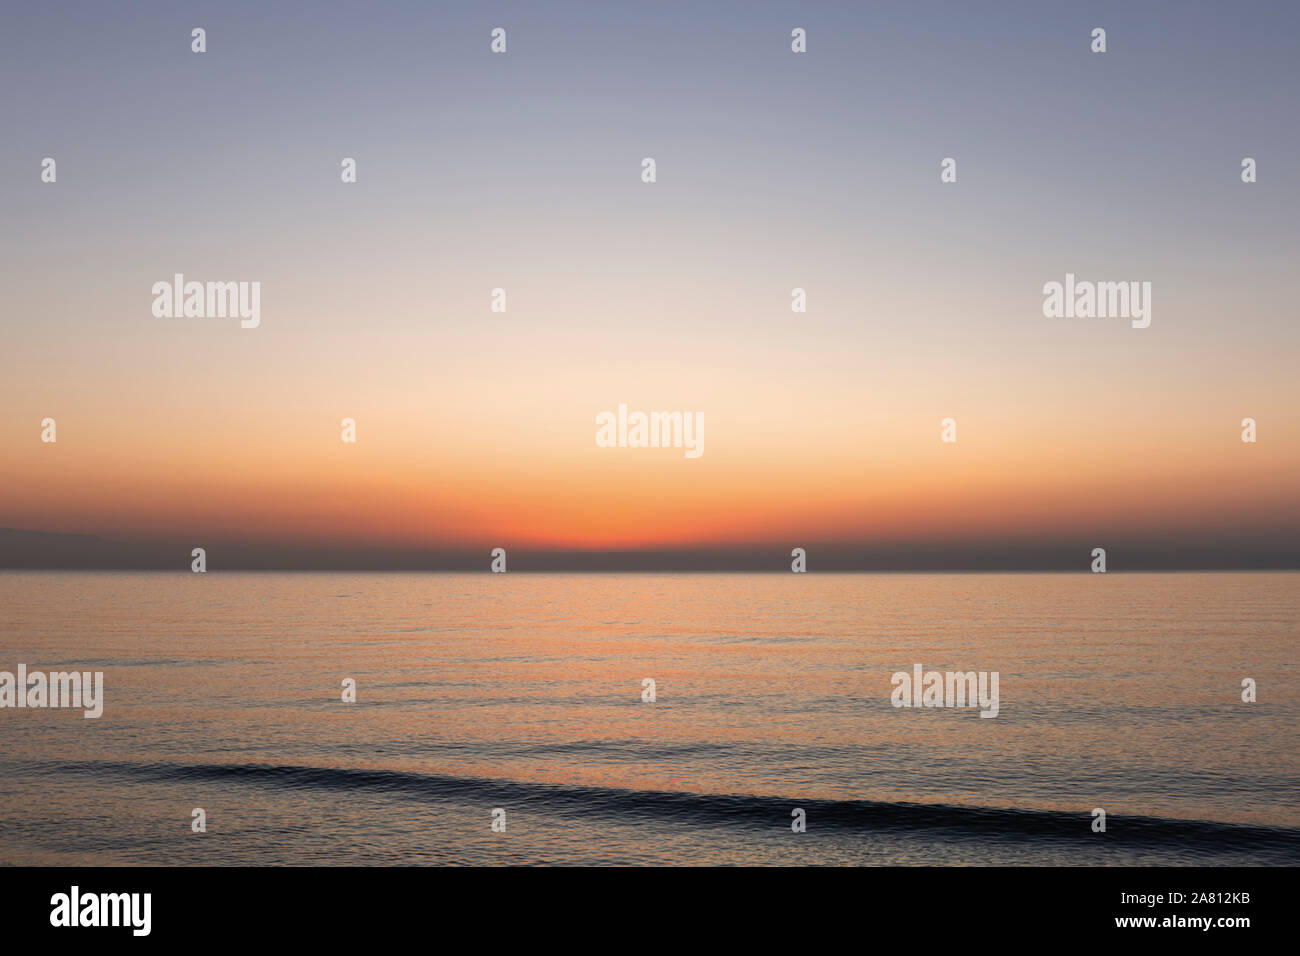 Dawn over the sea. Stock Photo